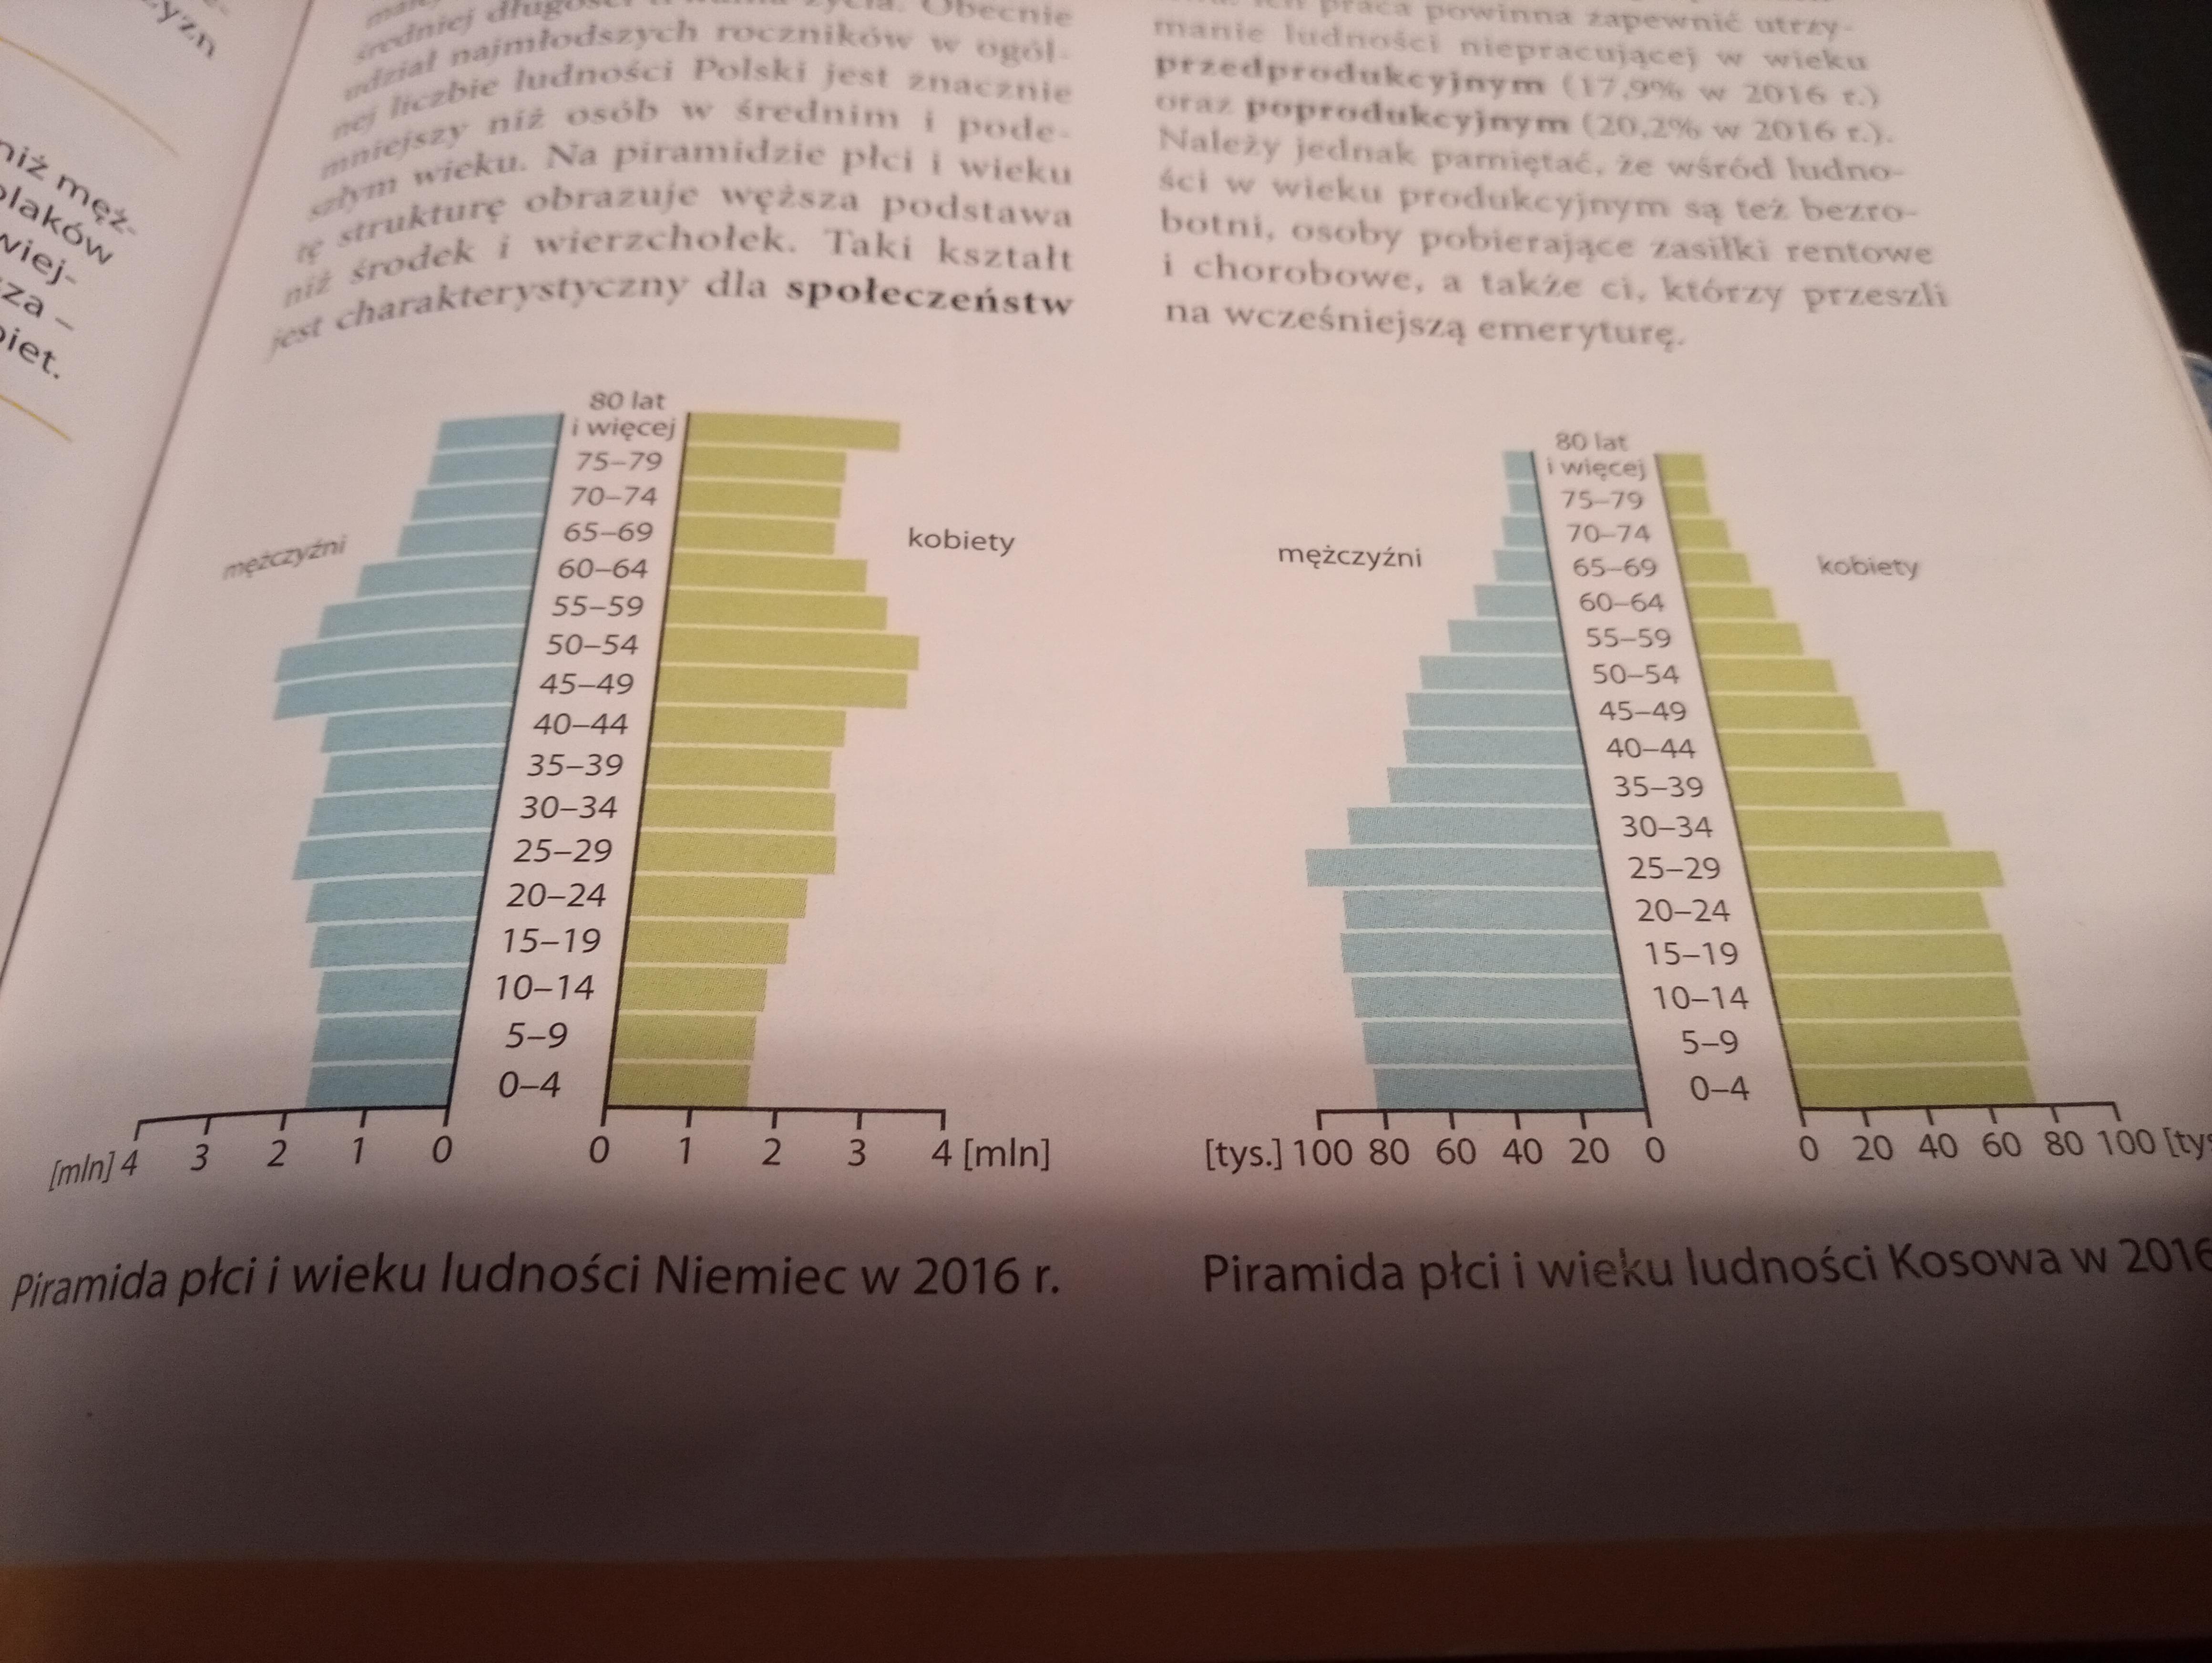 Ludnosc I Urbanizacja W Polsce Sprawdzian Sprawdzian kl.7 ludność i urbanizacja w Polsce - Quizizz